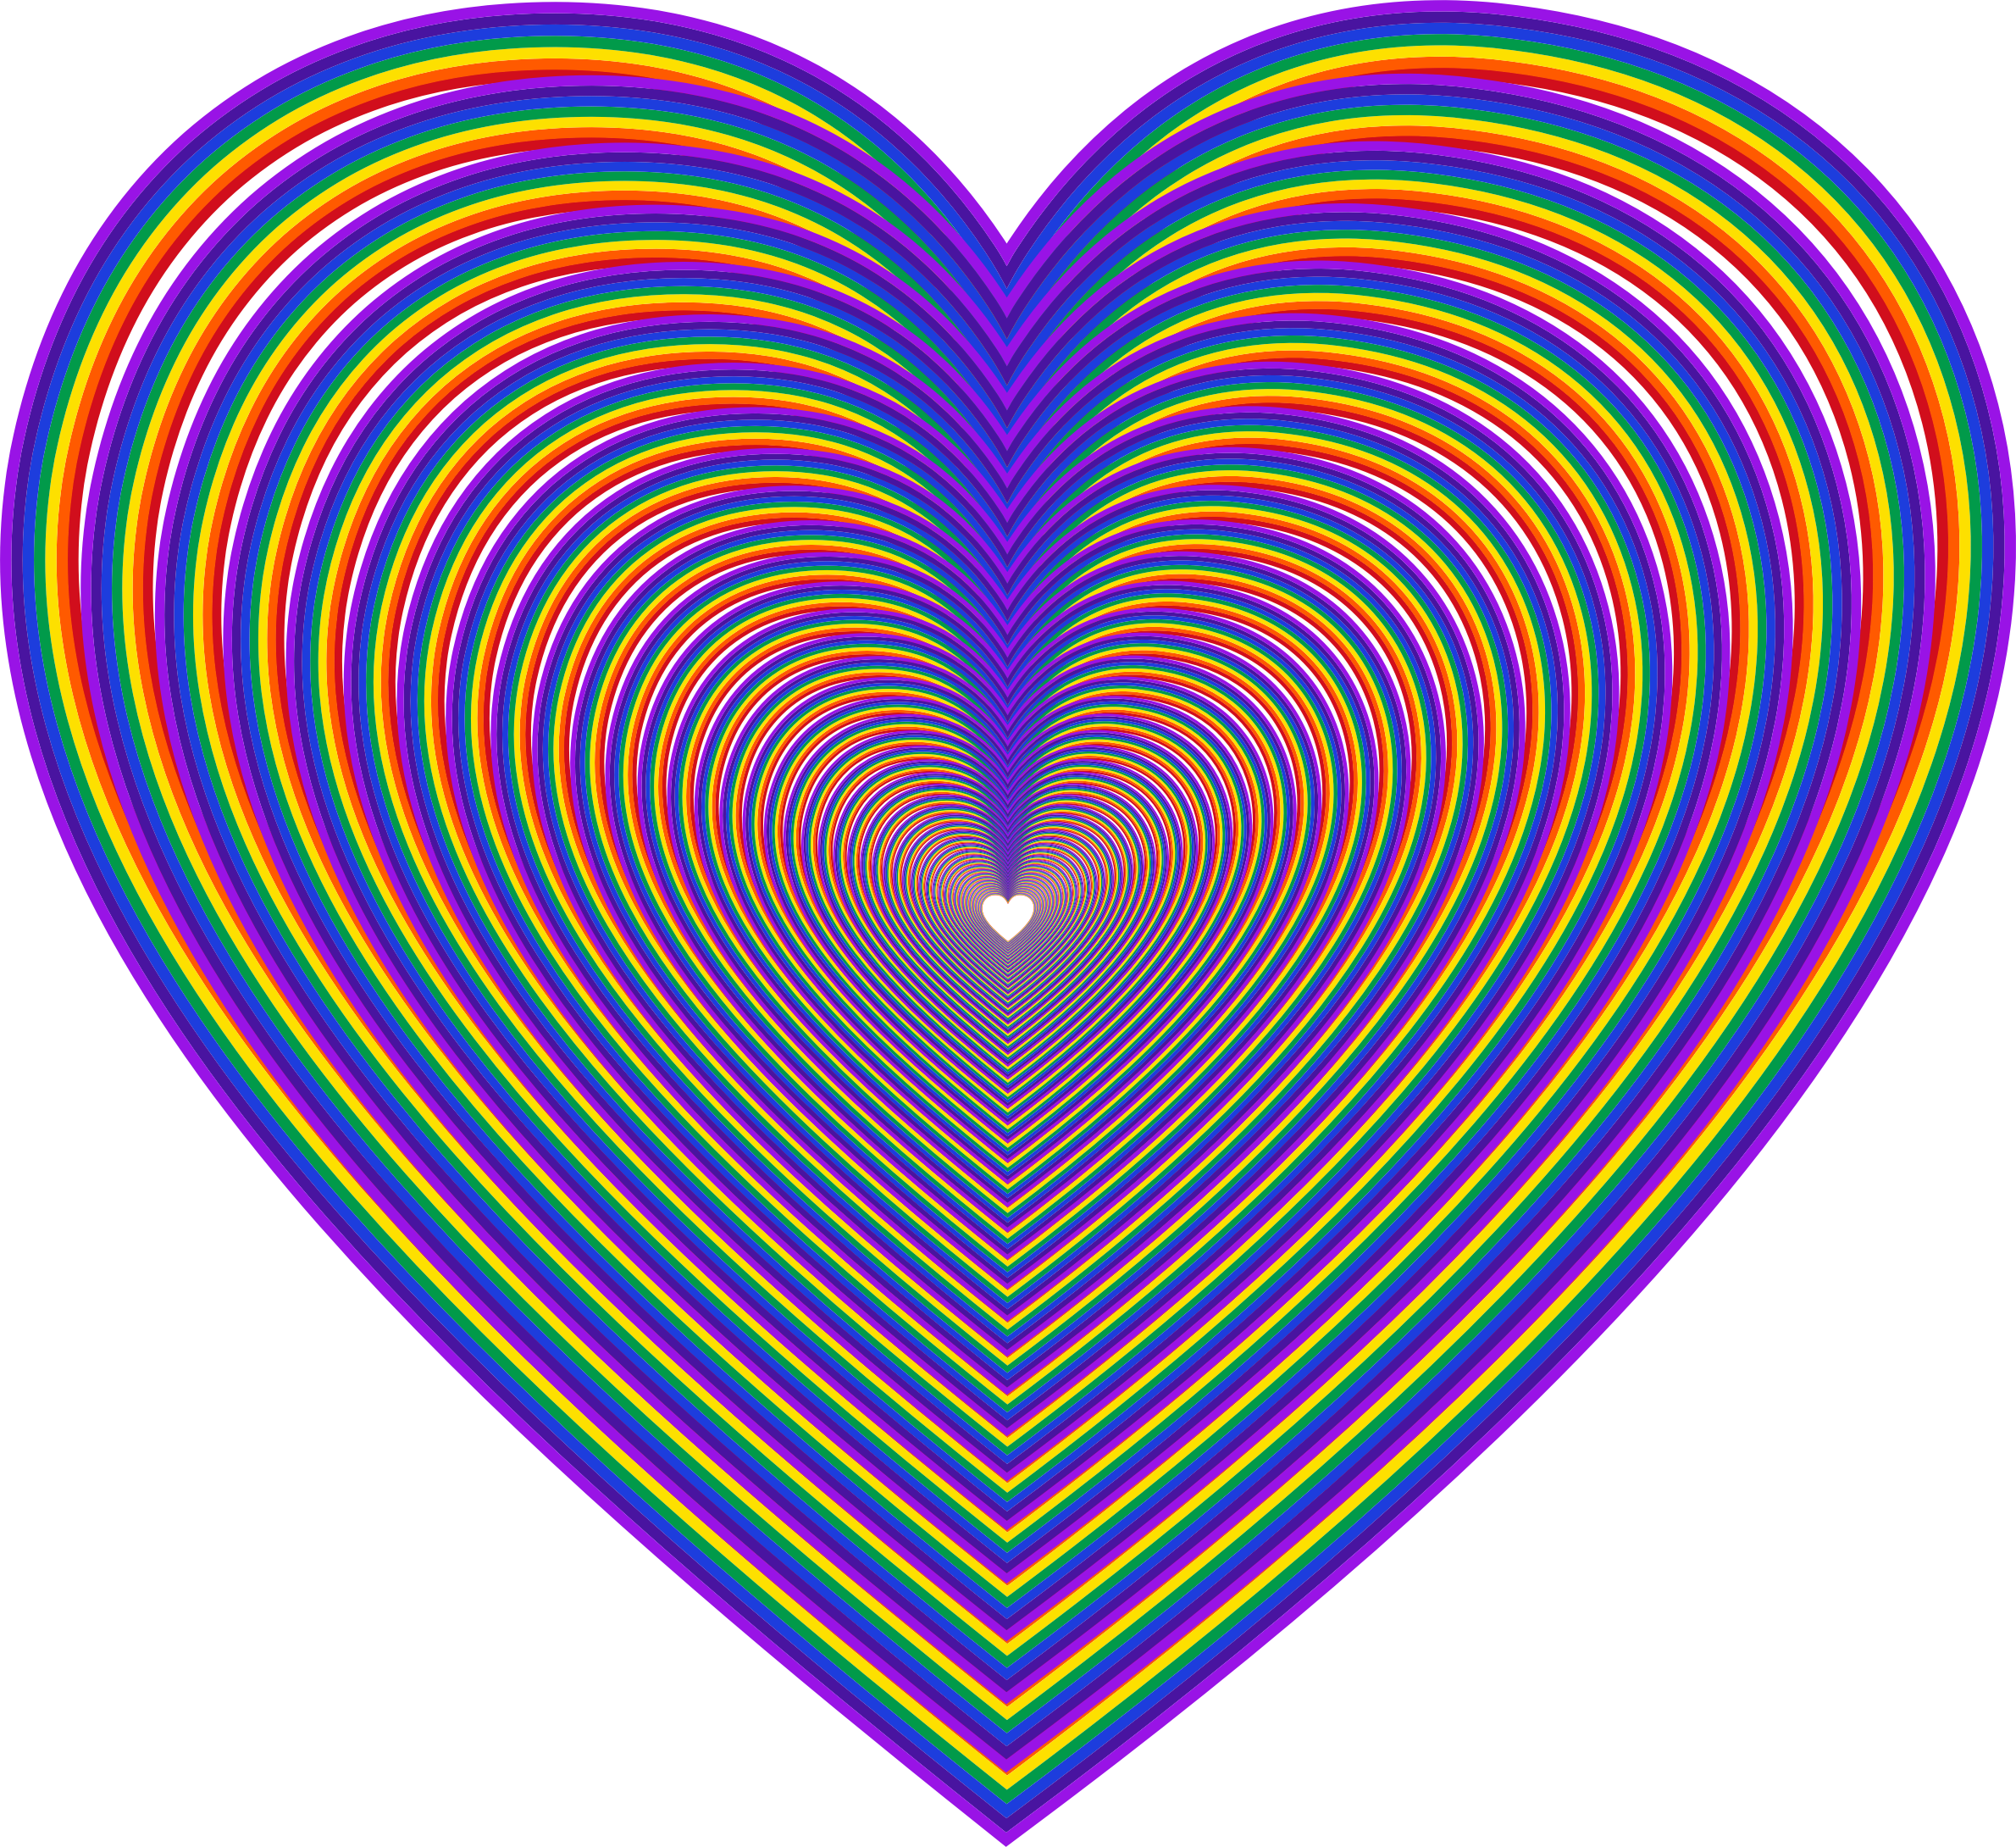 Big Image - Rainbow Heart (2380x2180)